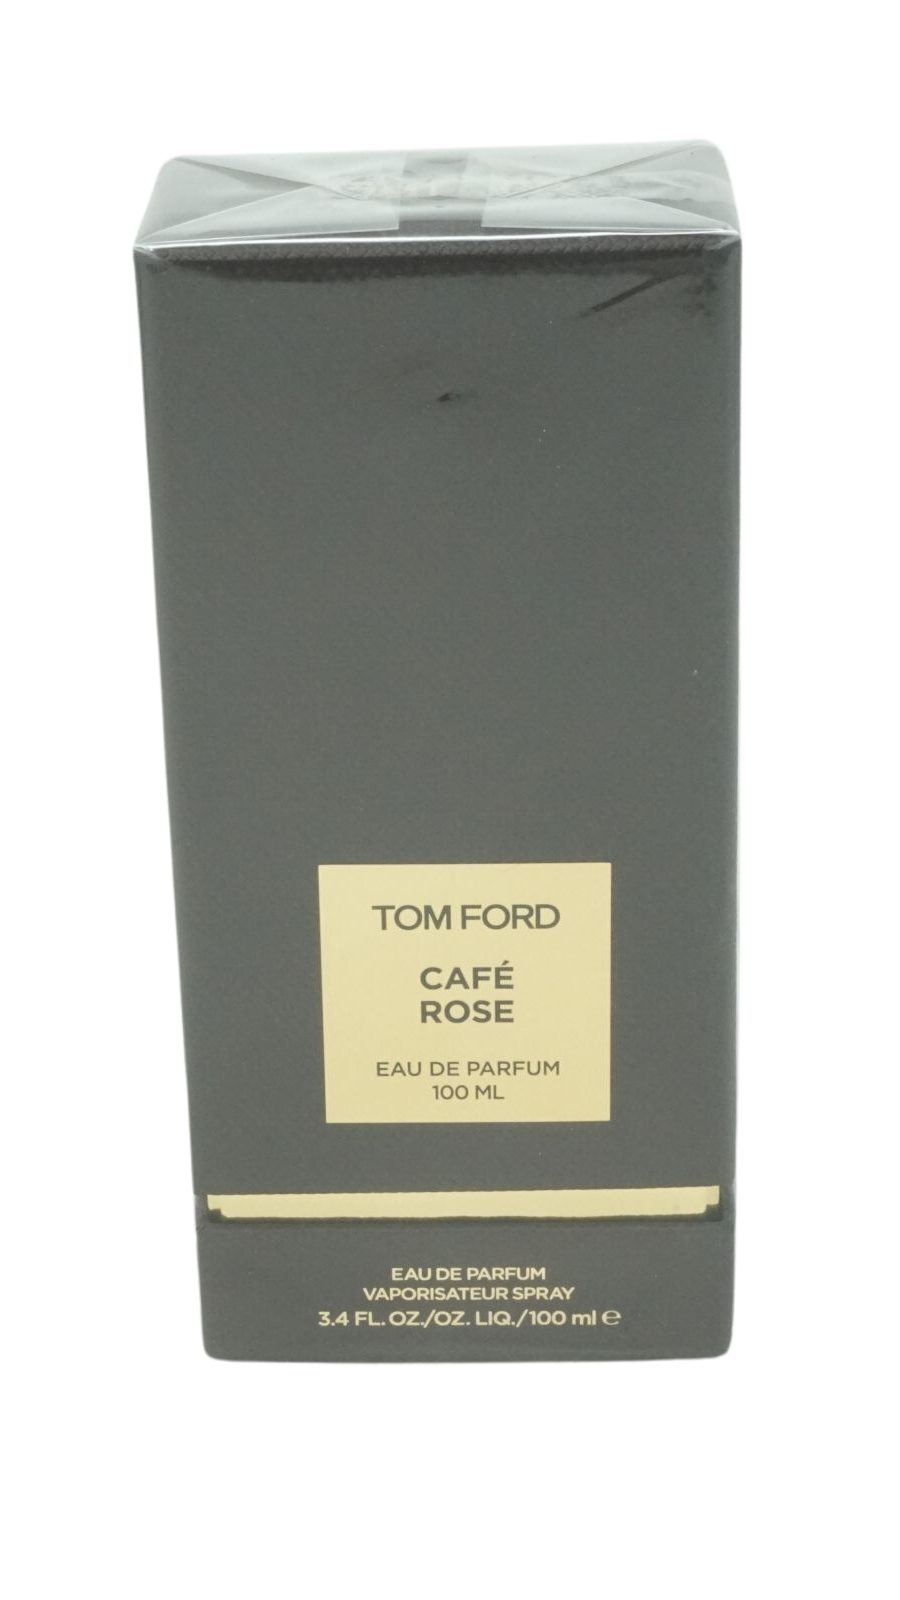 Tom Ford Eau de Parfum Tom Ford Cafe Rose Eau de Parfum 100ml Spray